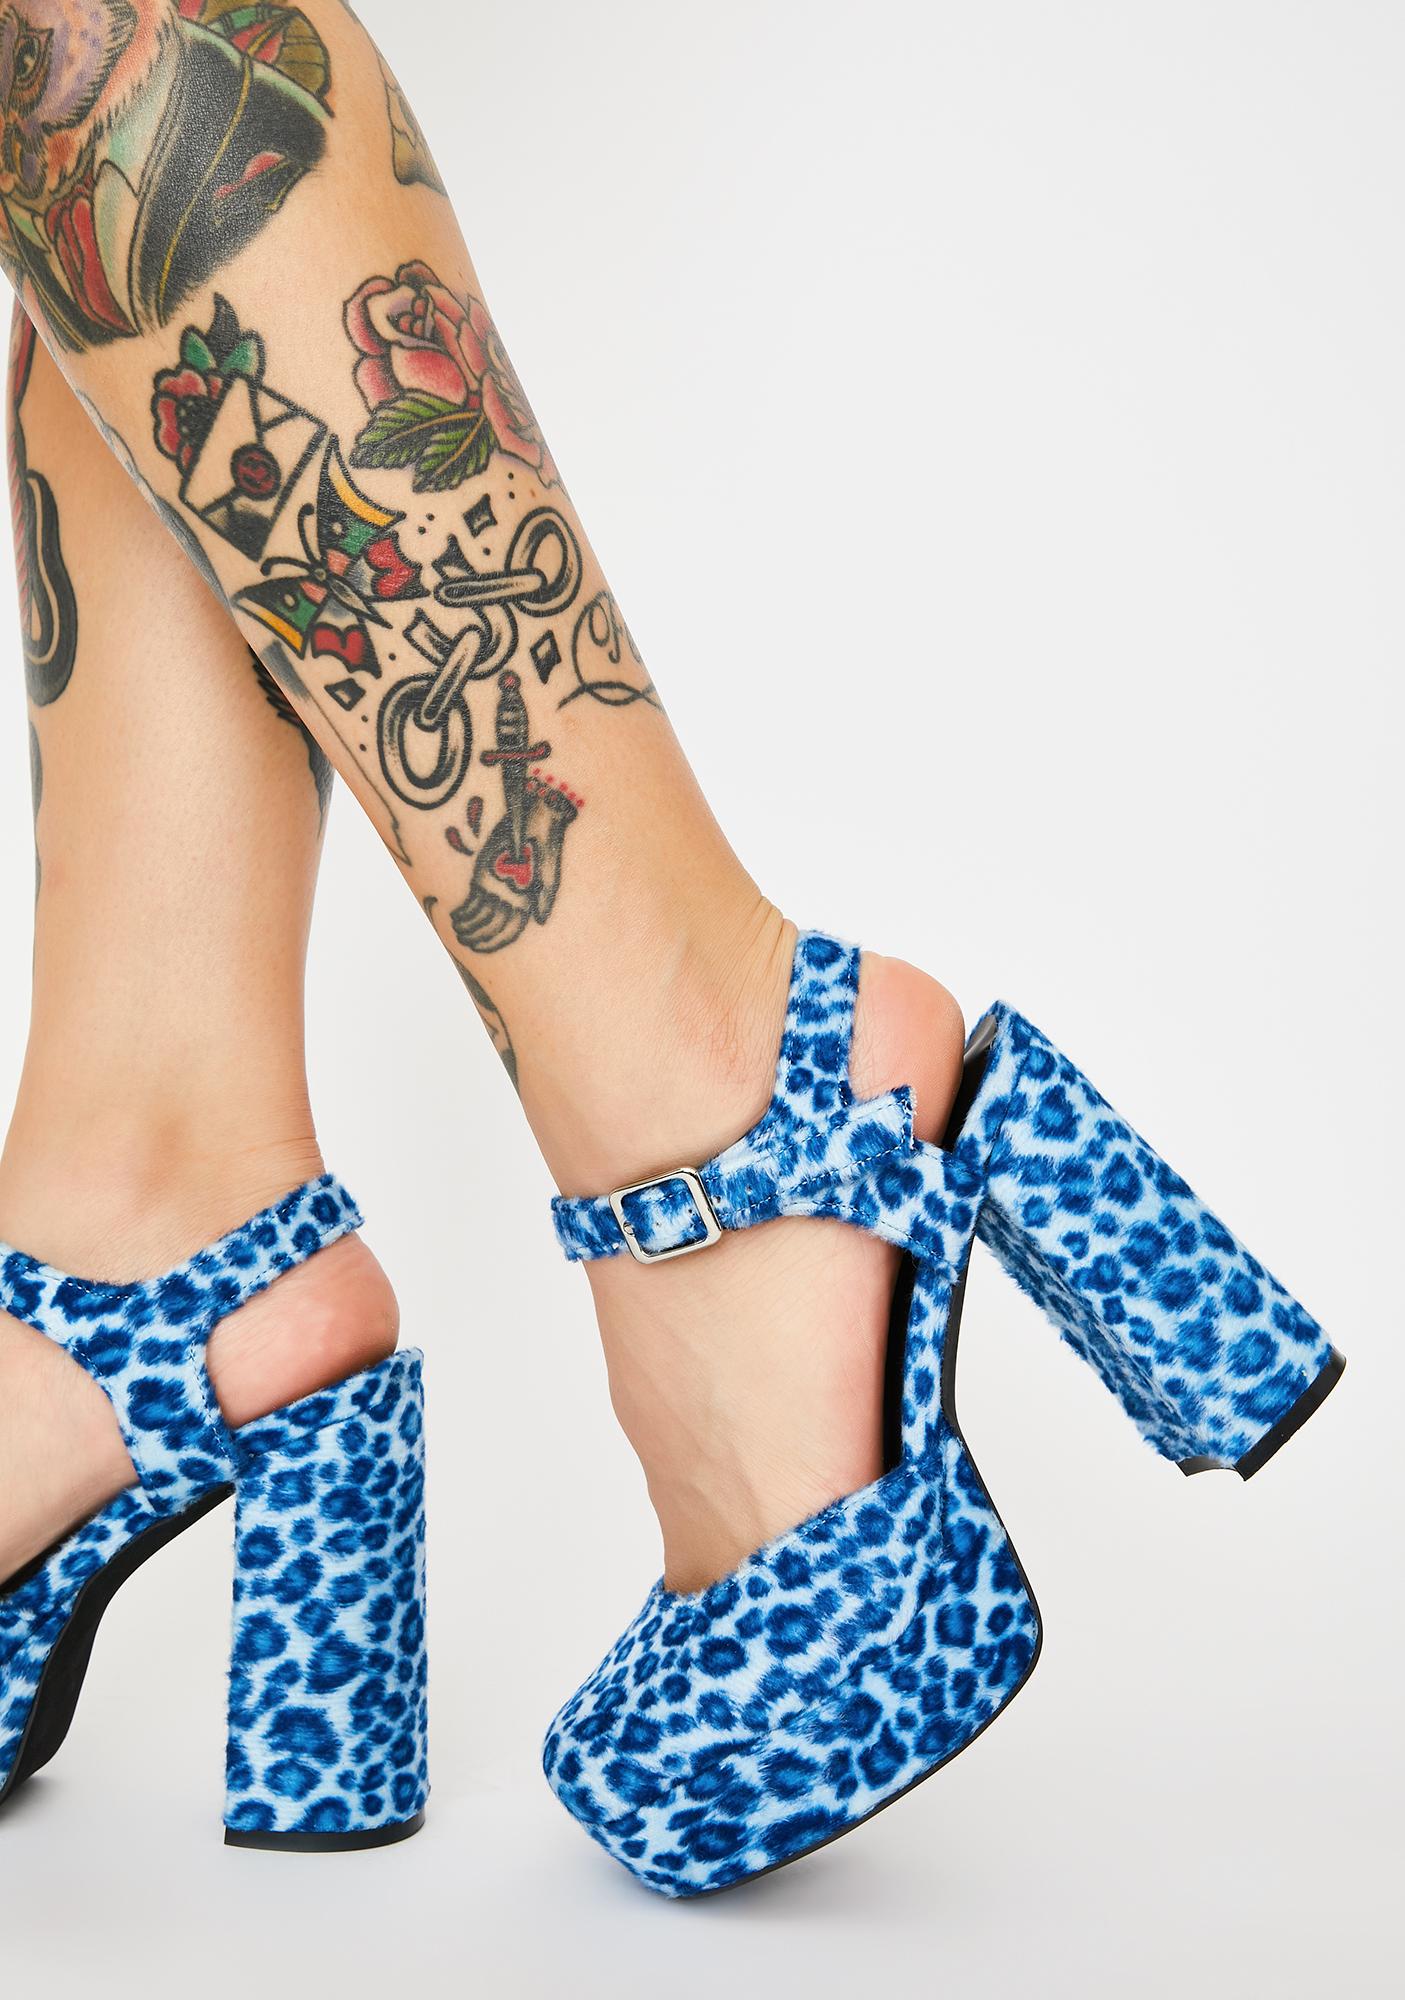 leopard platform heels